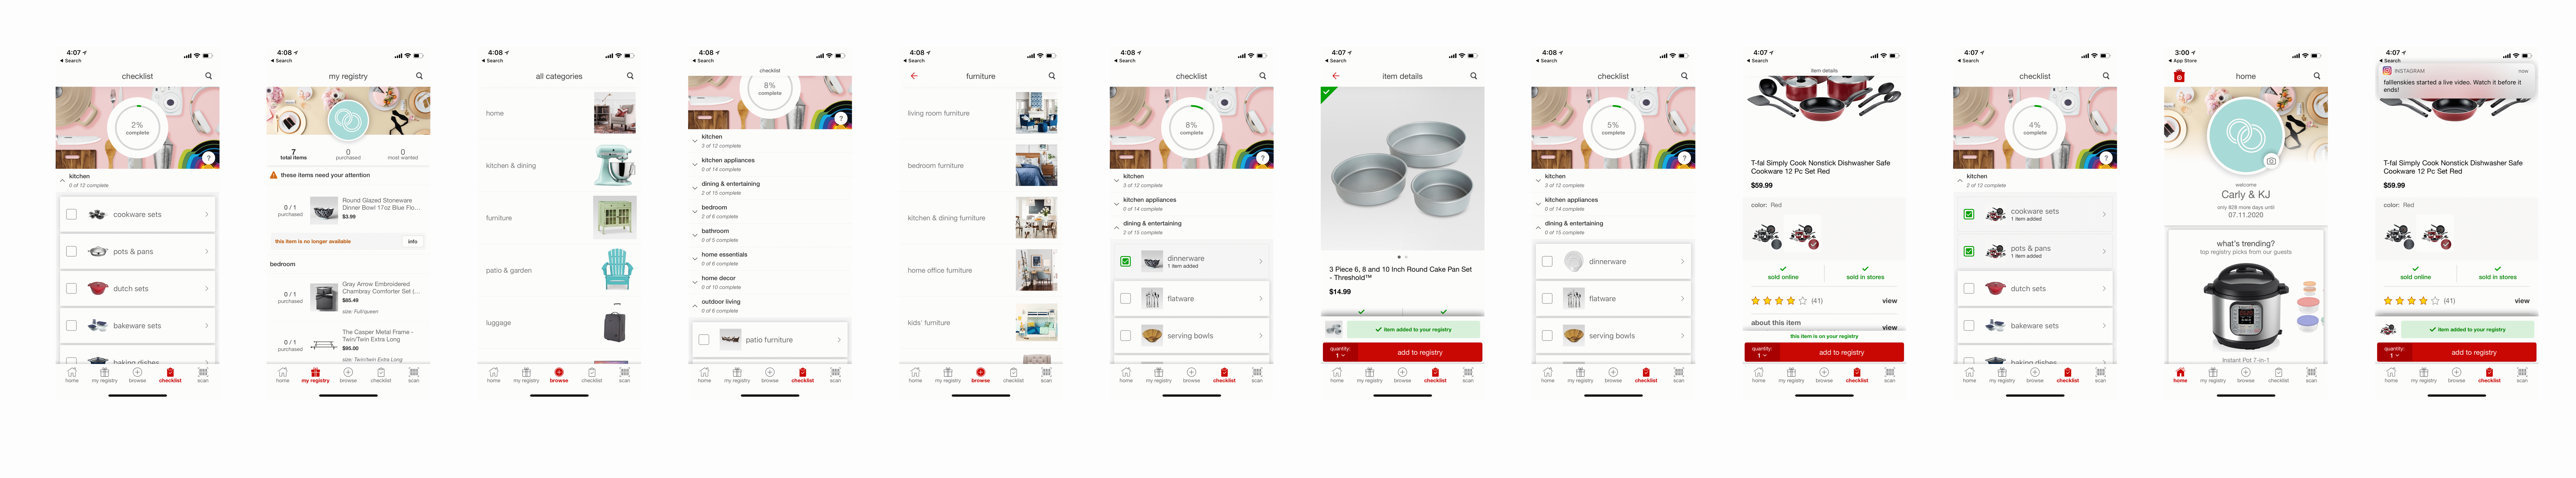 Target's registry app